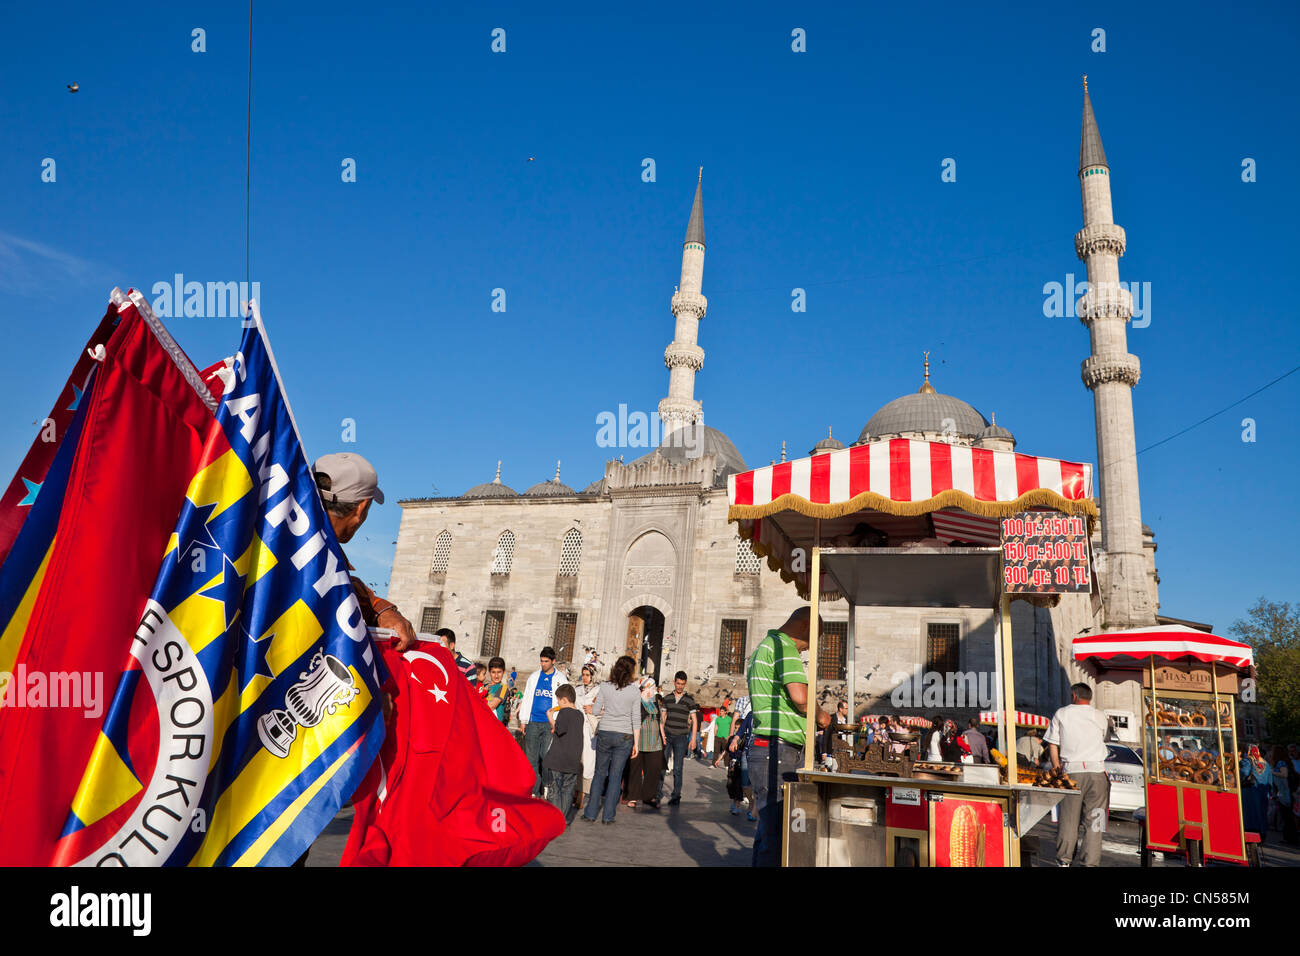 Turchia, Istanbul, centro storico elencati come patrimonio mondiale dall' UNESCO, Eminönü district, un venditore di bandiere nella parte anteriore del Foto Stock